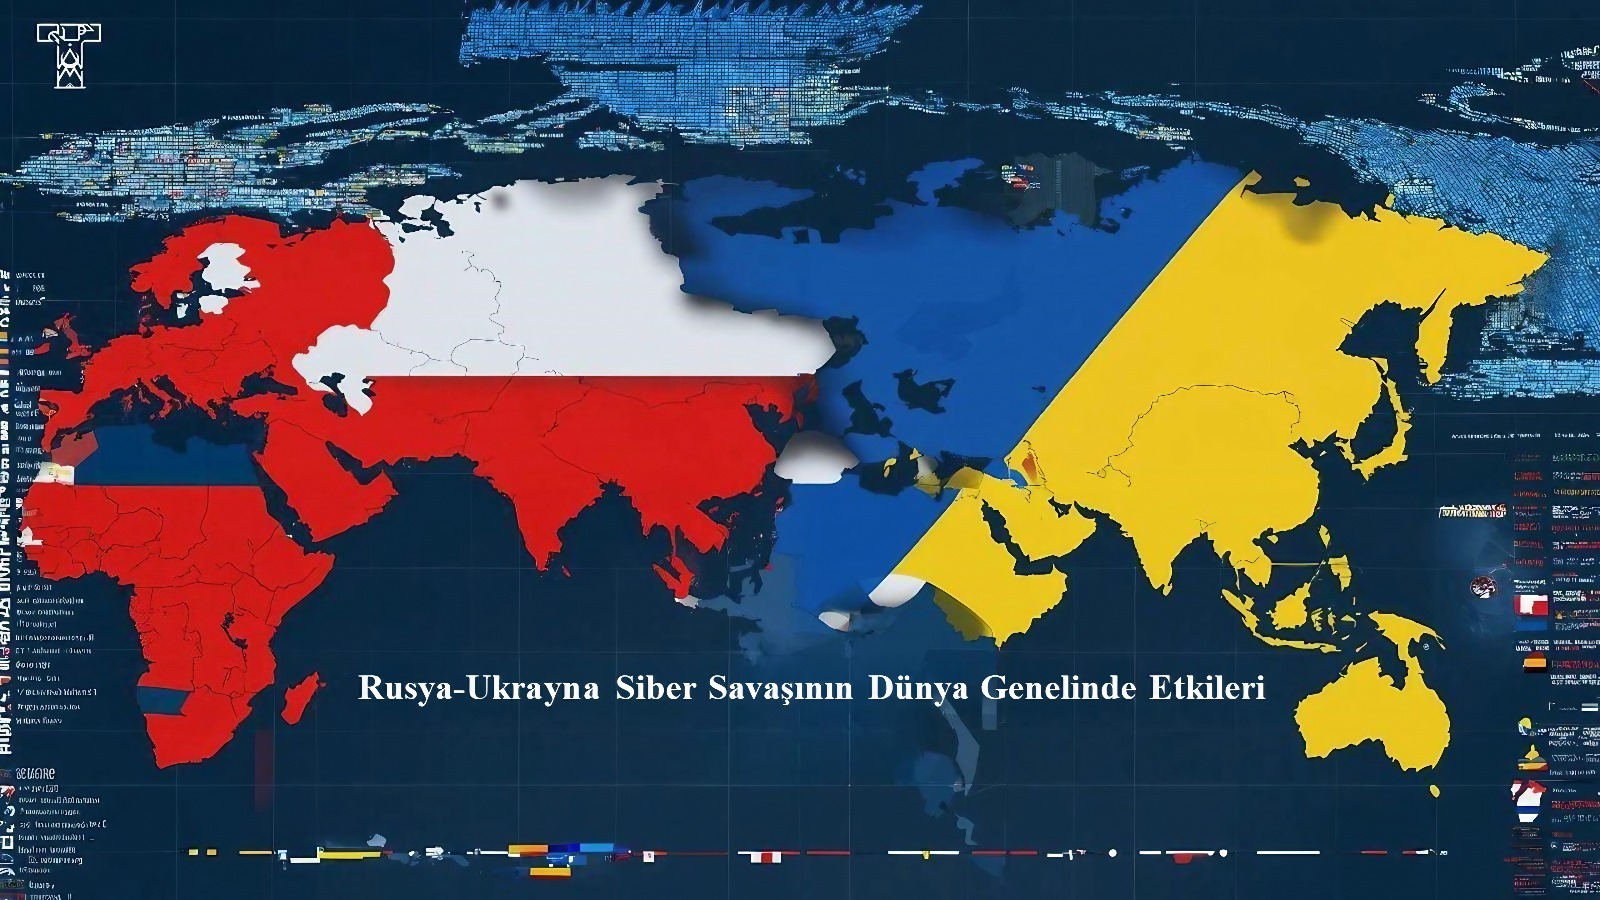 Rusya-Ukrayna Siber Savaşının Dünya Genelinde Etkileri